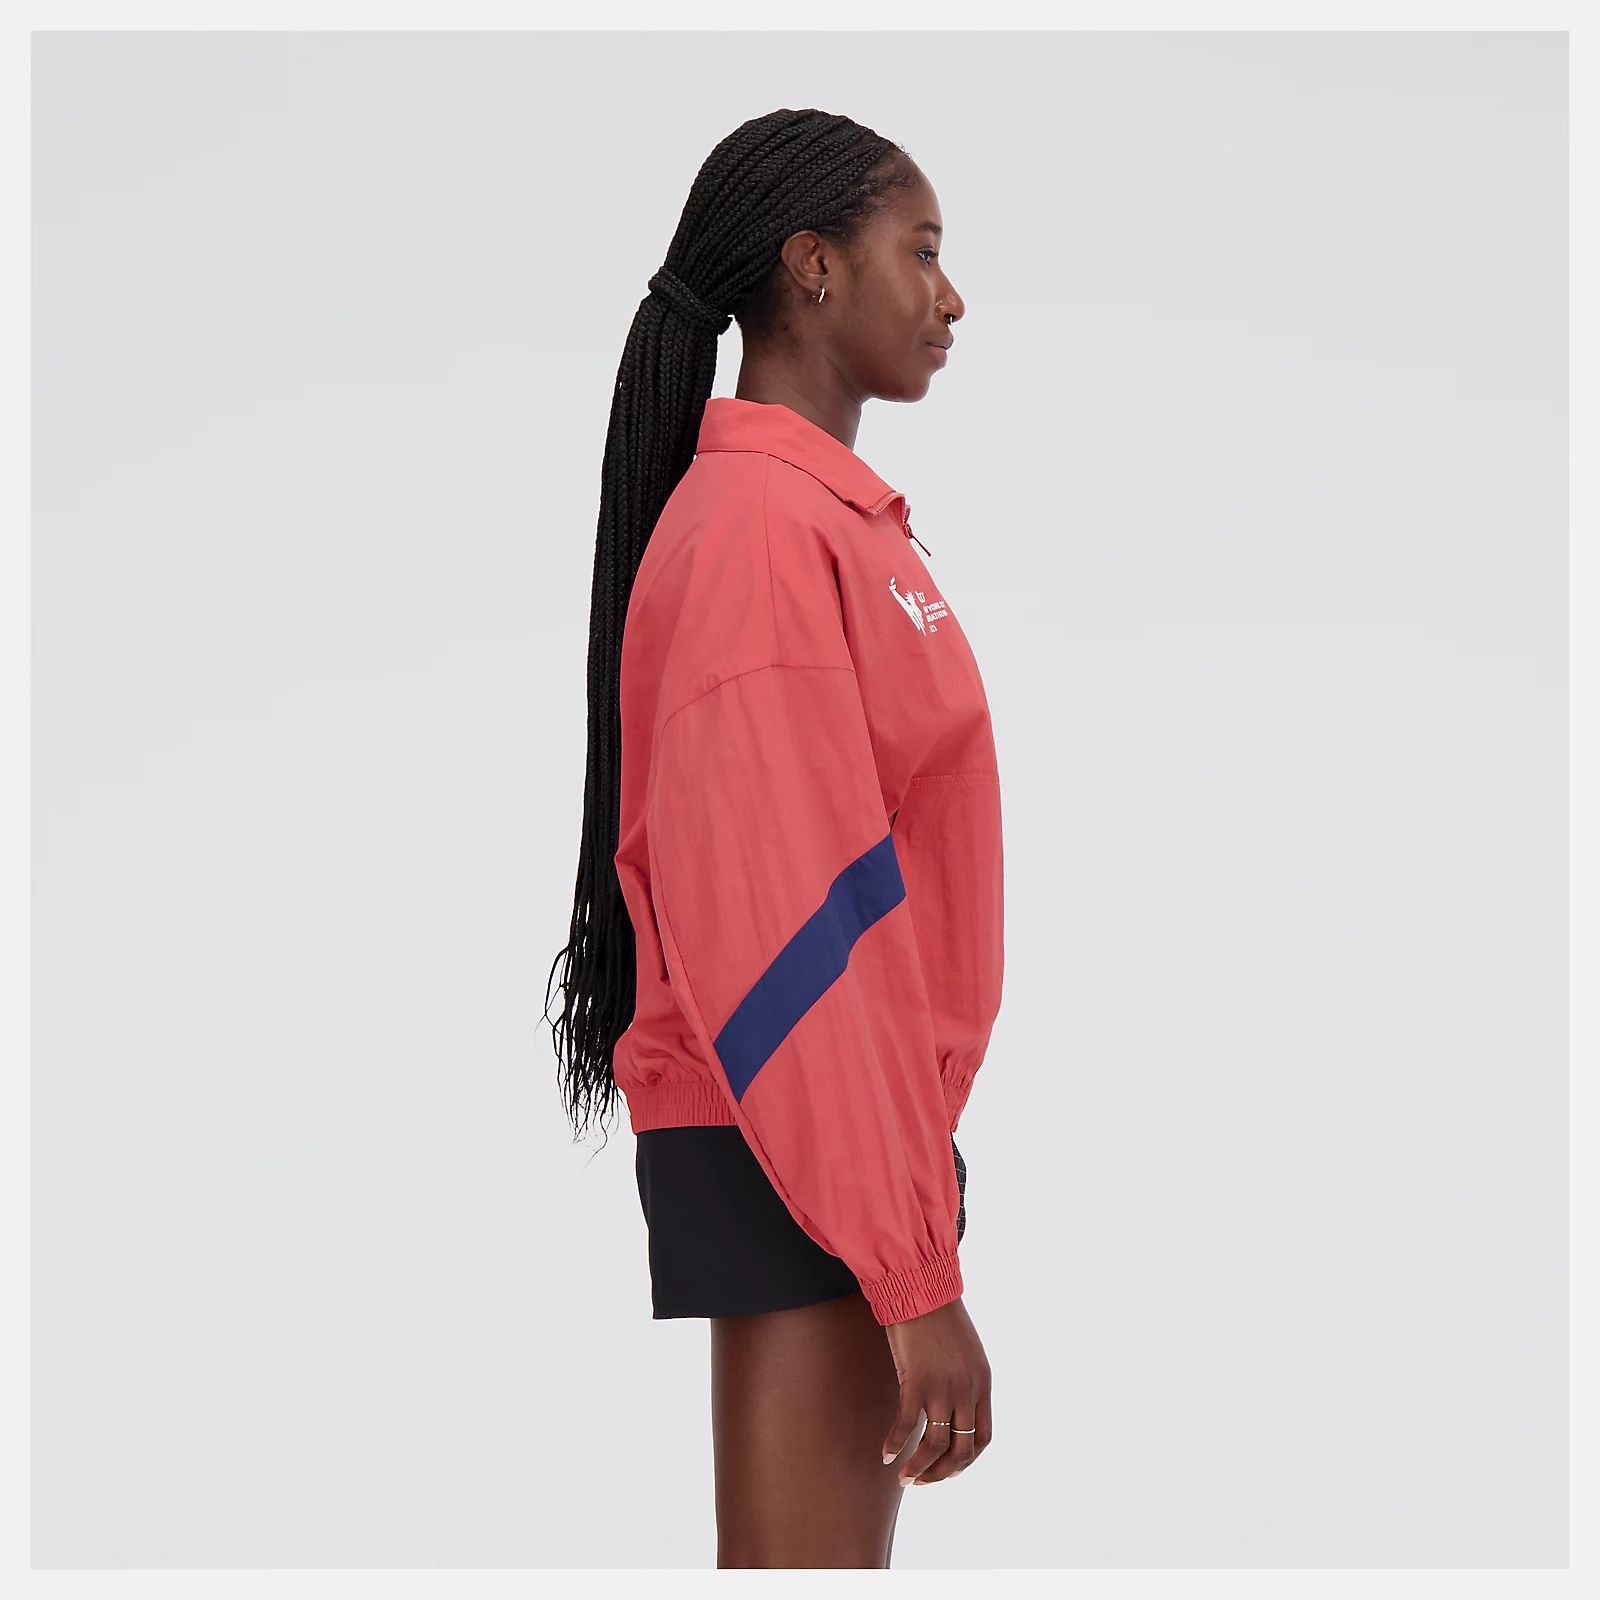 NYC Marathon Athletics Remastered Woven Jacket | New Balance Athletics, Inc.